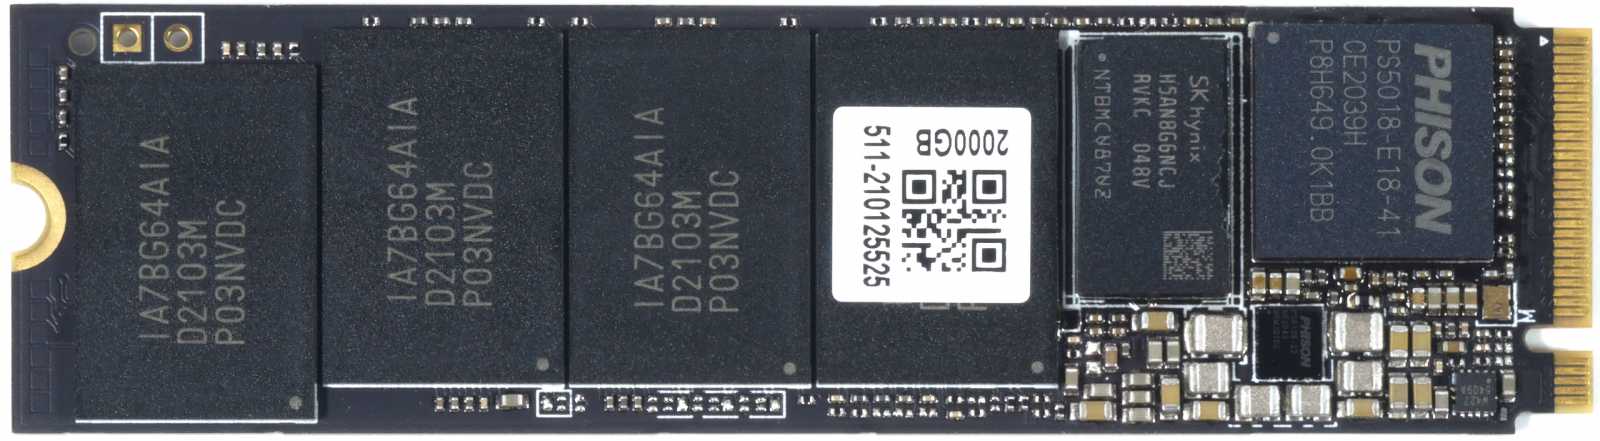 MSI Spatium M480 2 TB – Extrémně výkonný M.2 disk od MSI